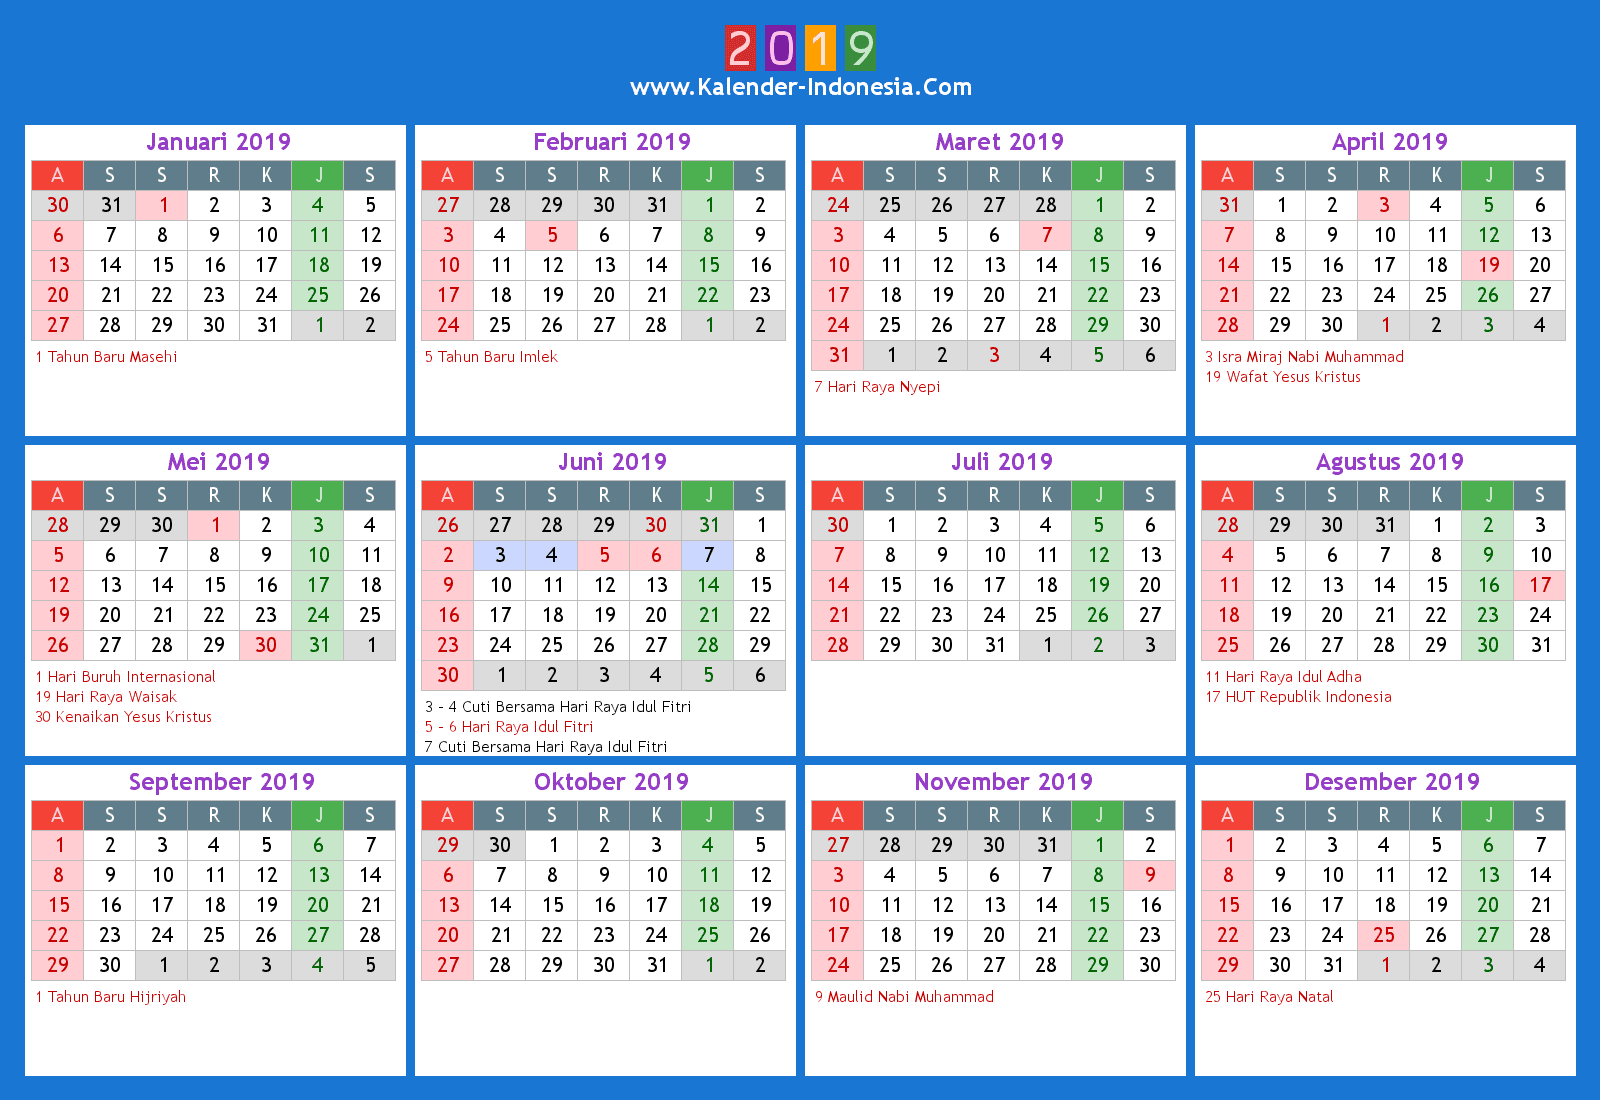 Kalender Indonesia Online: 2019